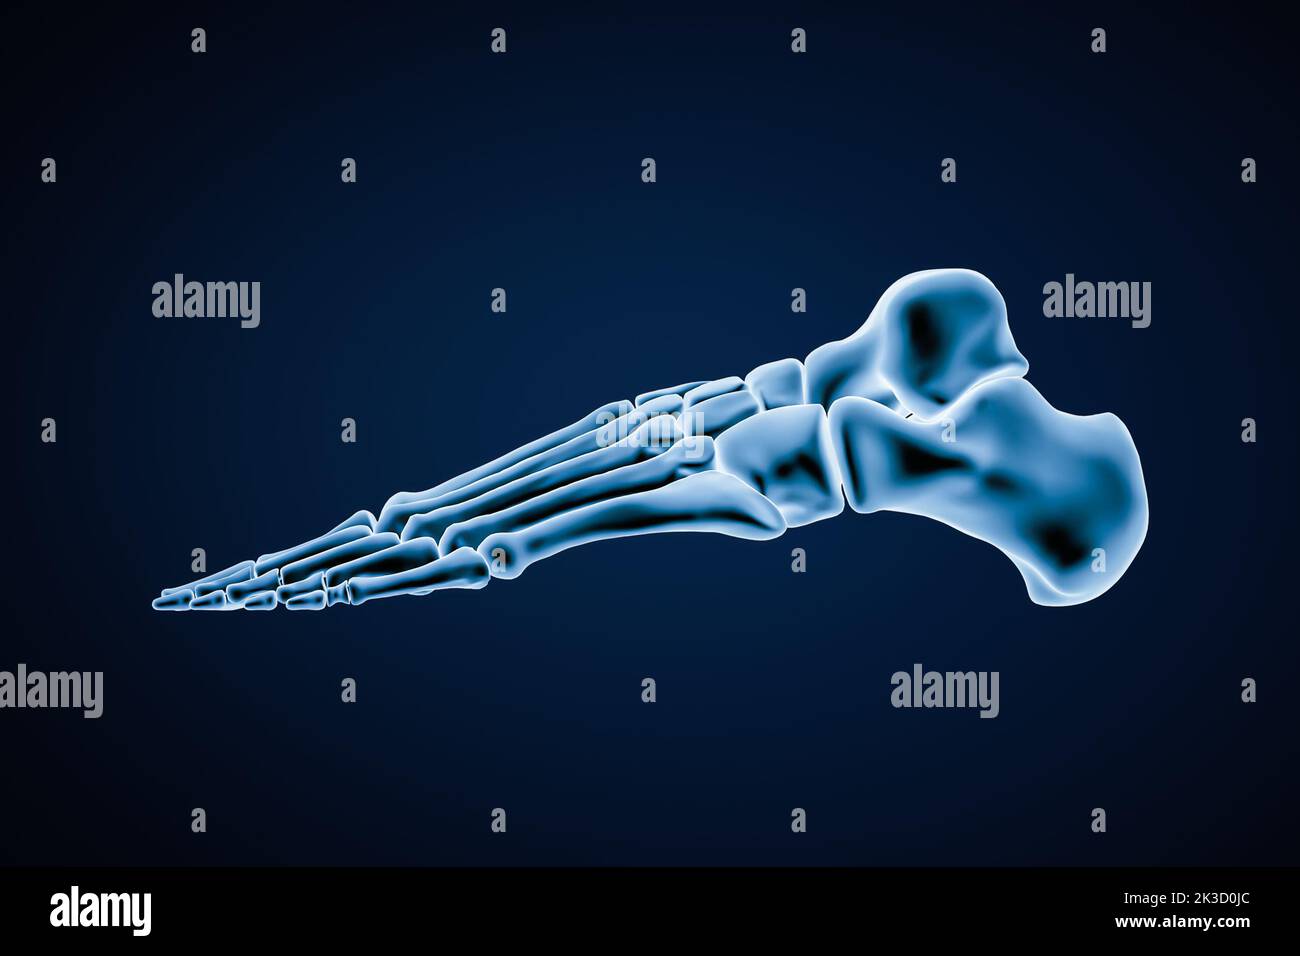 Laterale oder Profilansicht von präzisen menschlichen linken Fußknochen isoliert auf blauem Hintergrund 3D Rendering Illustration. Anatomie, Osteologie, Orthopädie conce Stockfoto